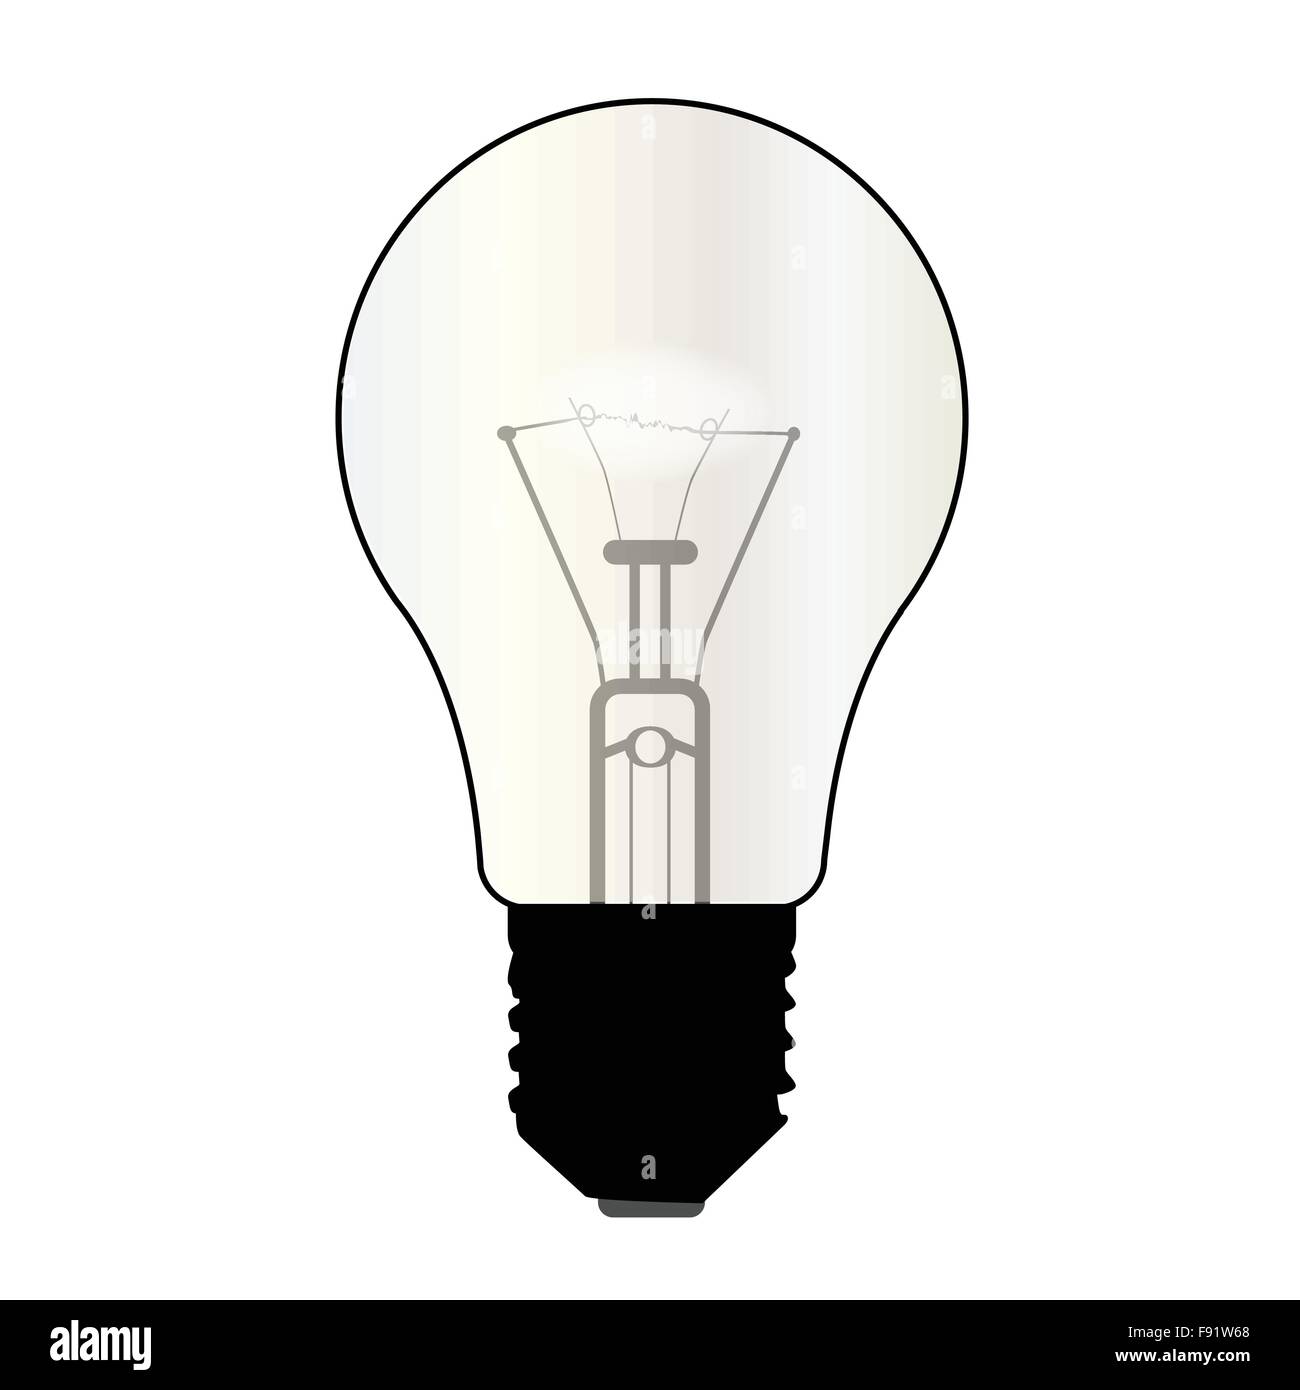 Une ampoule standard typique sur un fond blanc Illustration de Vecteur